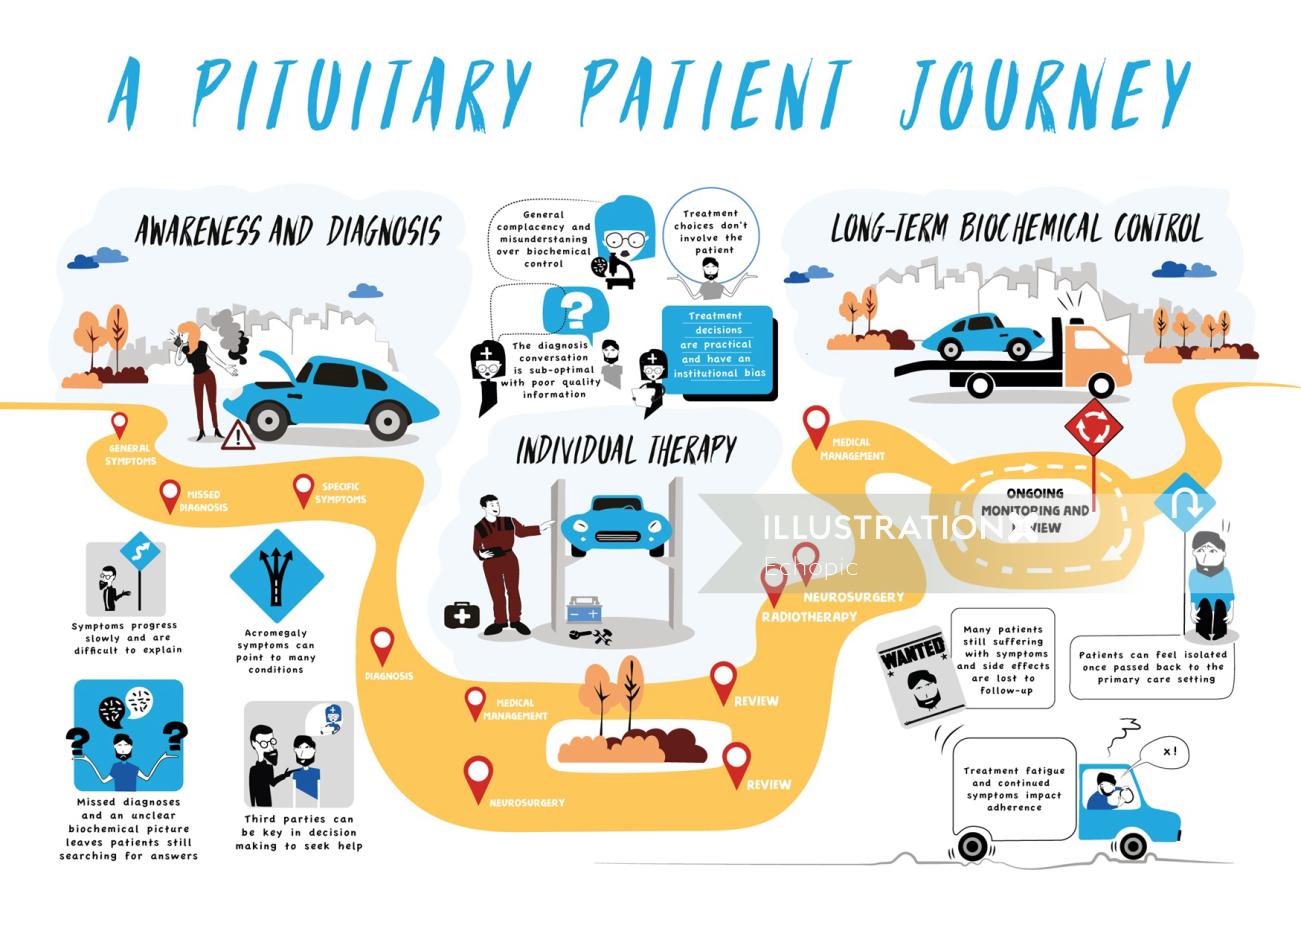 Patient Journey illustration